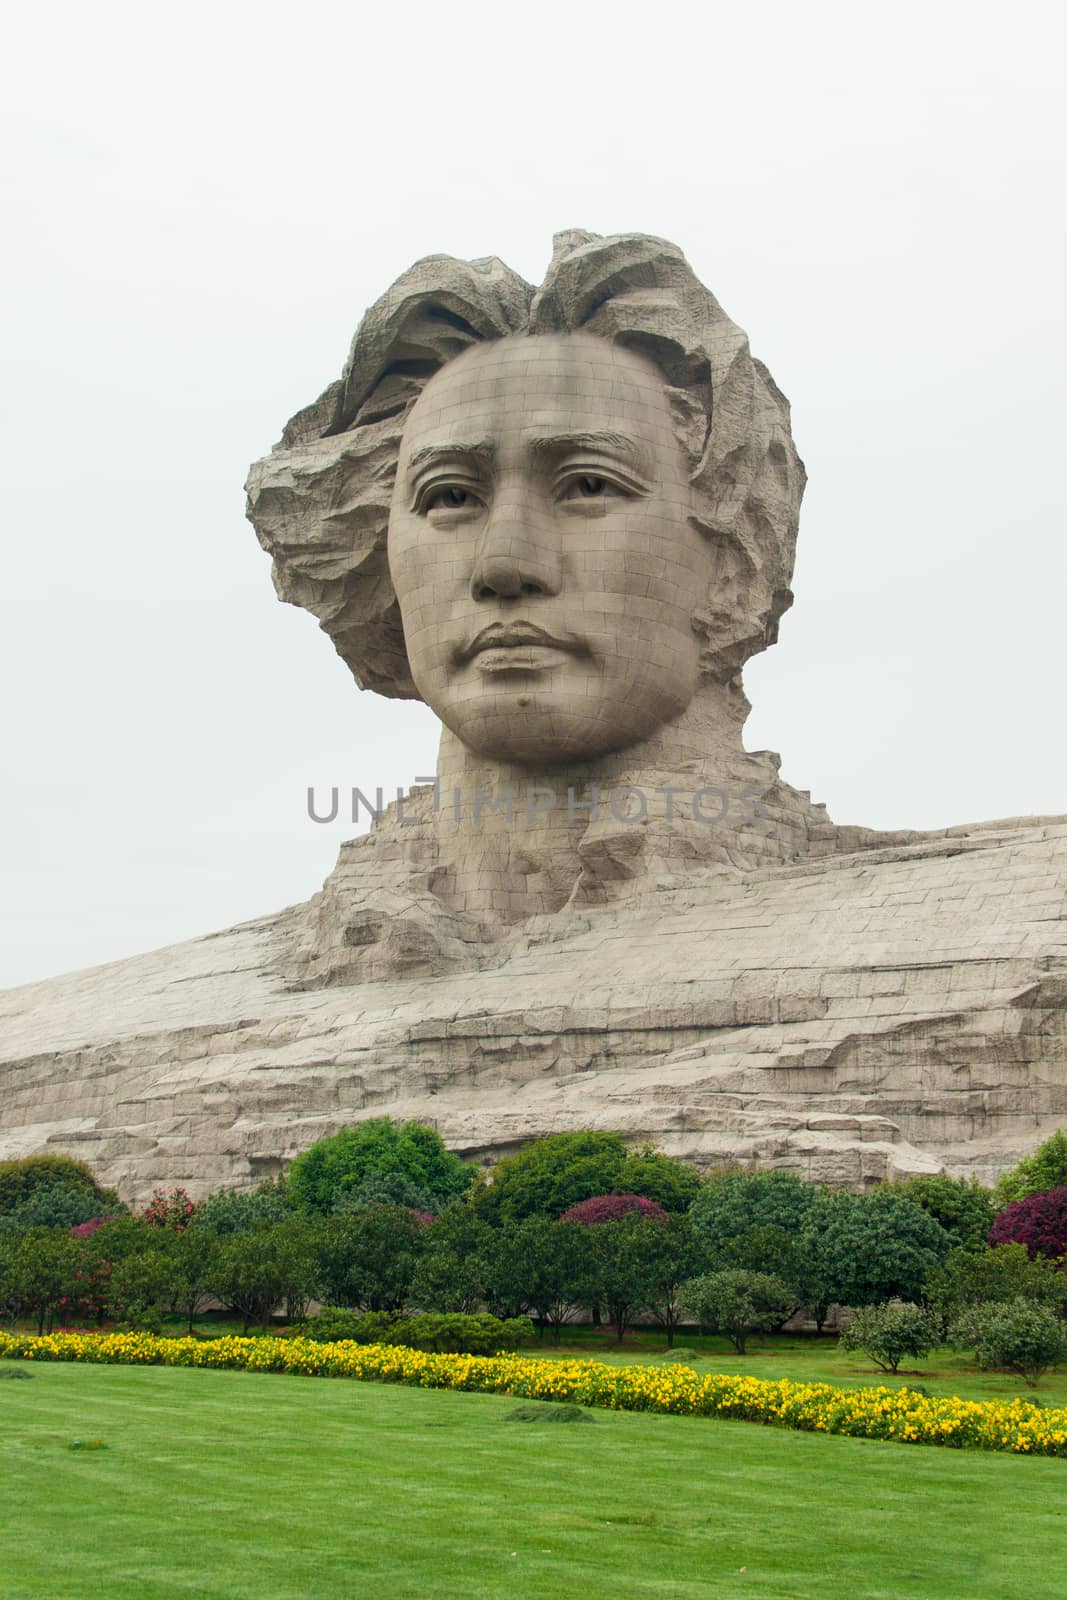 Changsha Orange Isle young Mao Zedong statue